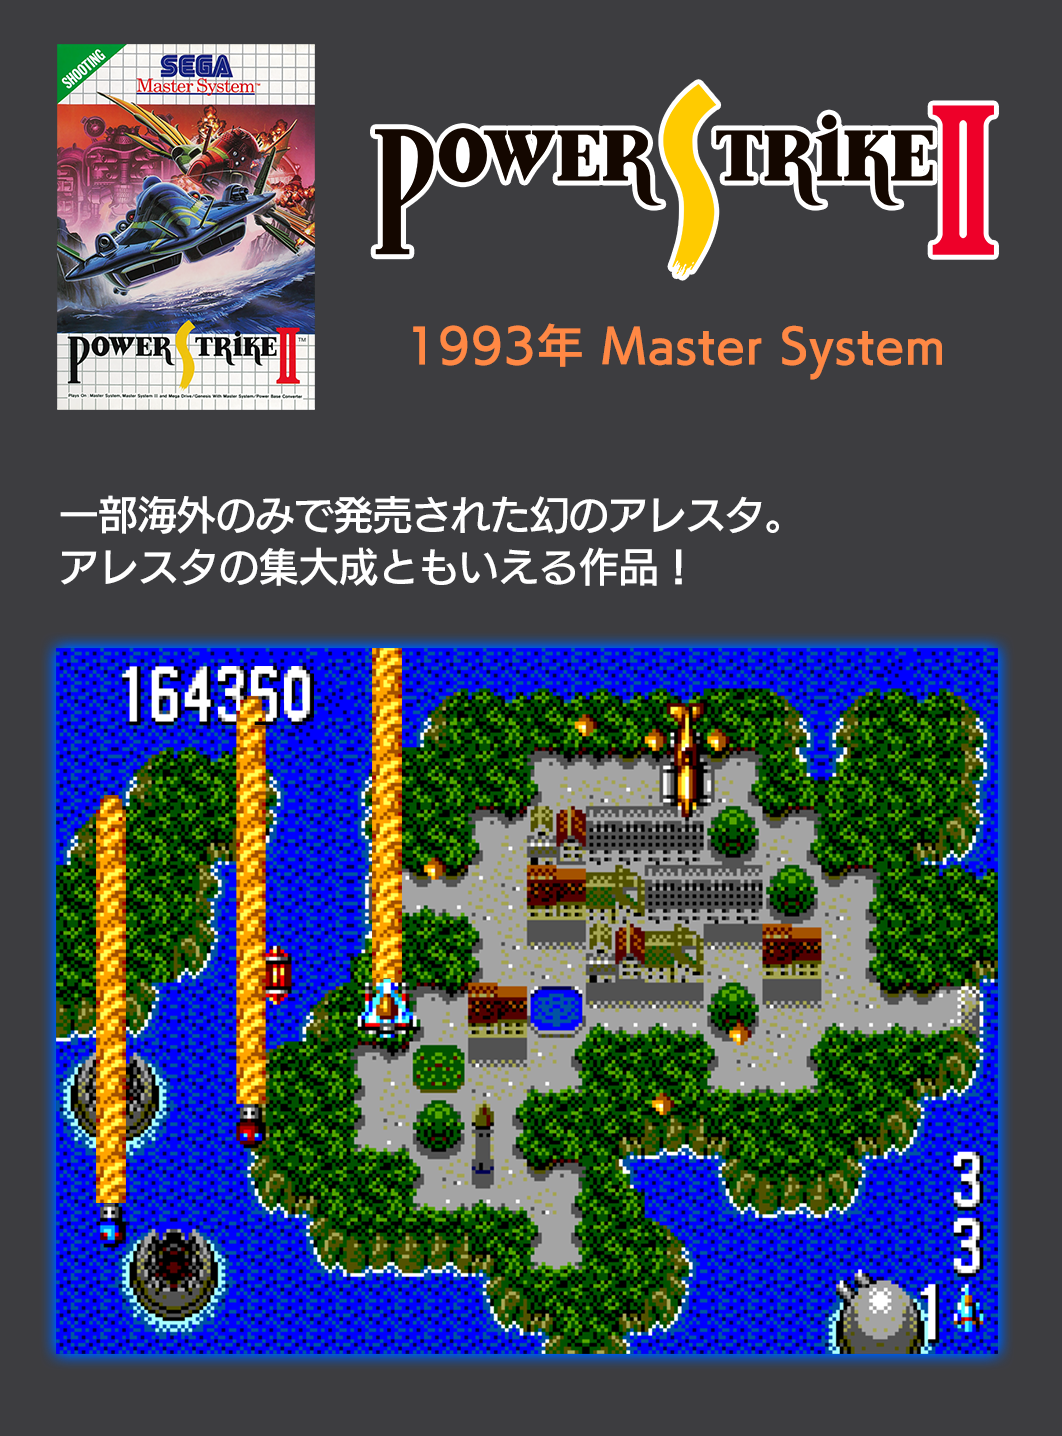 セガ・マスターシステム版 PowerStrike II